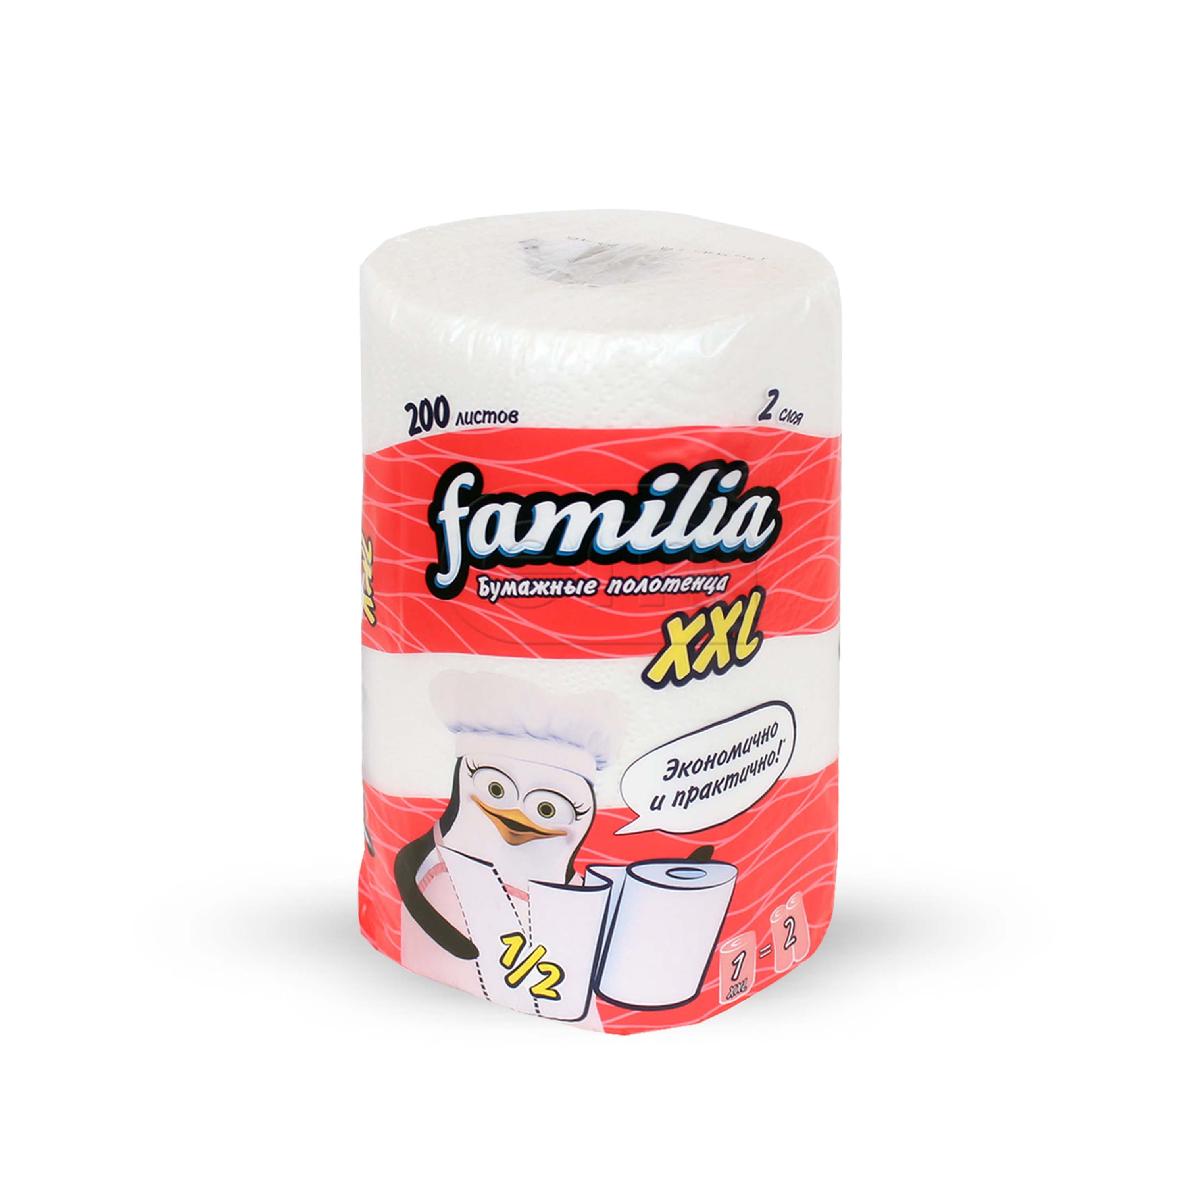 Бумажные полотенца в рулоне 2-сл 1шт "Familia XXL" (18)